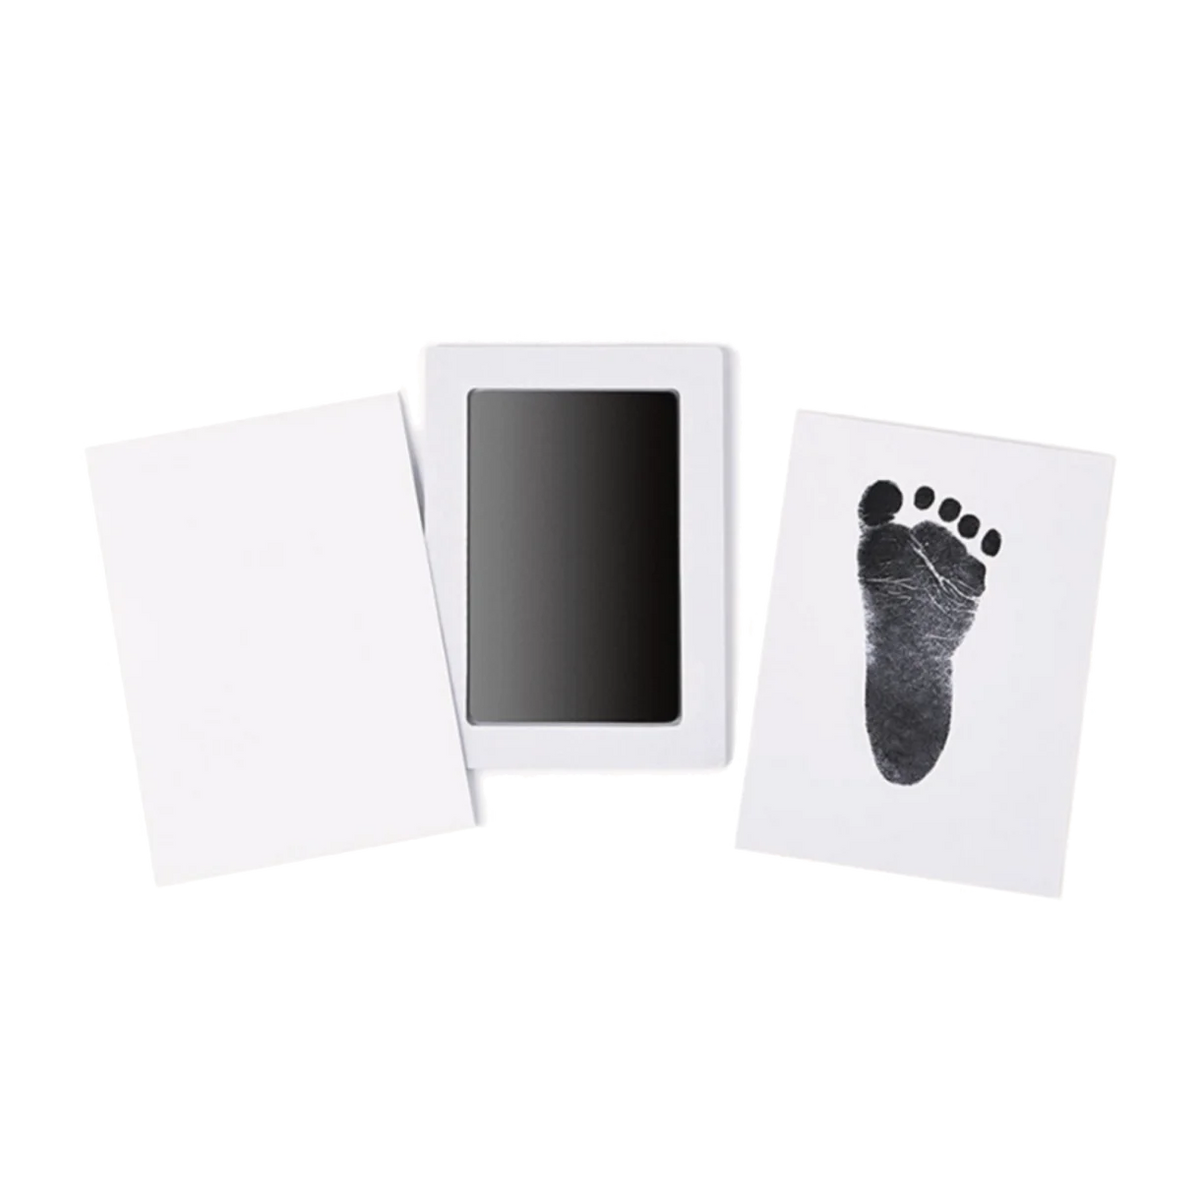 BAMBAM Foot/Handprint Set